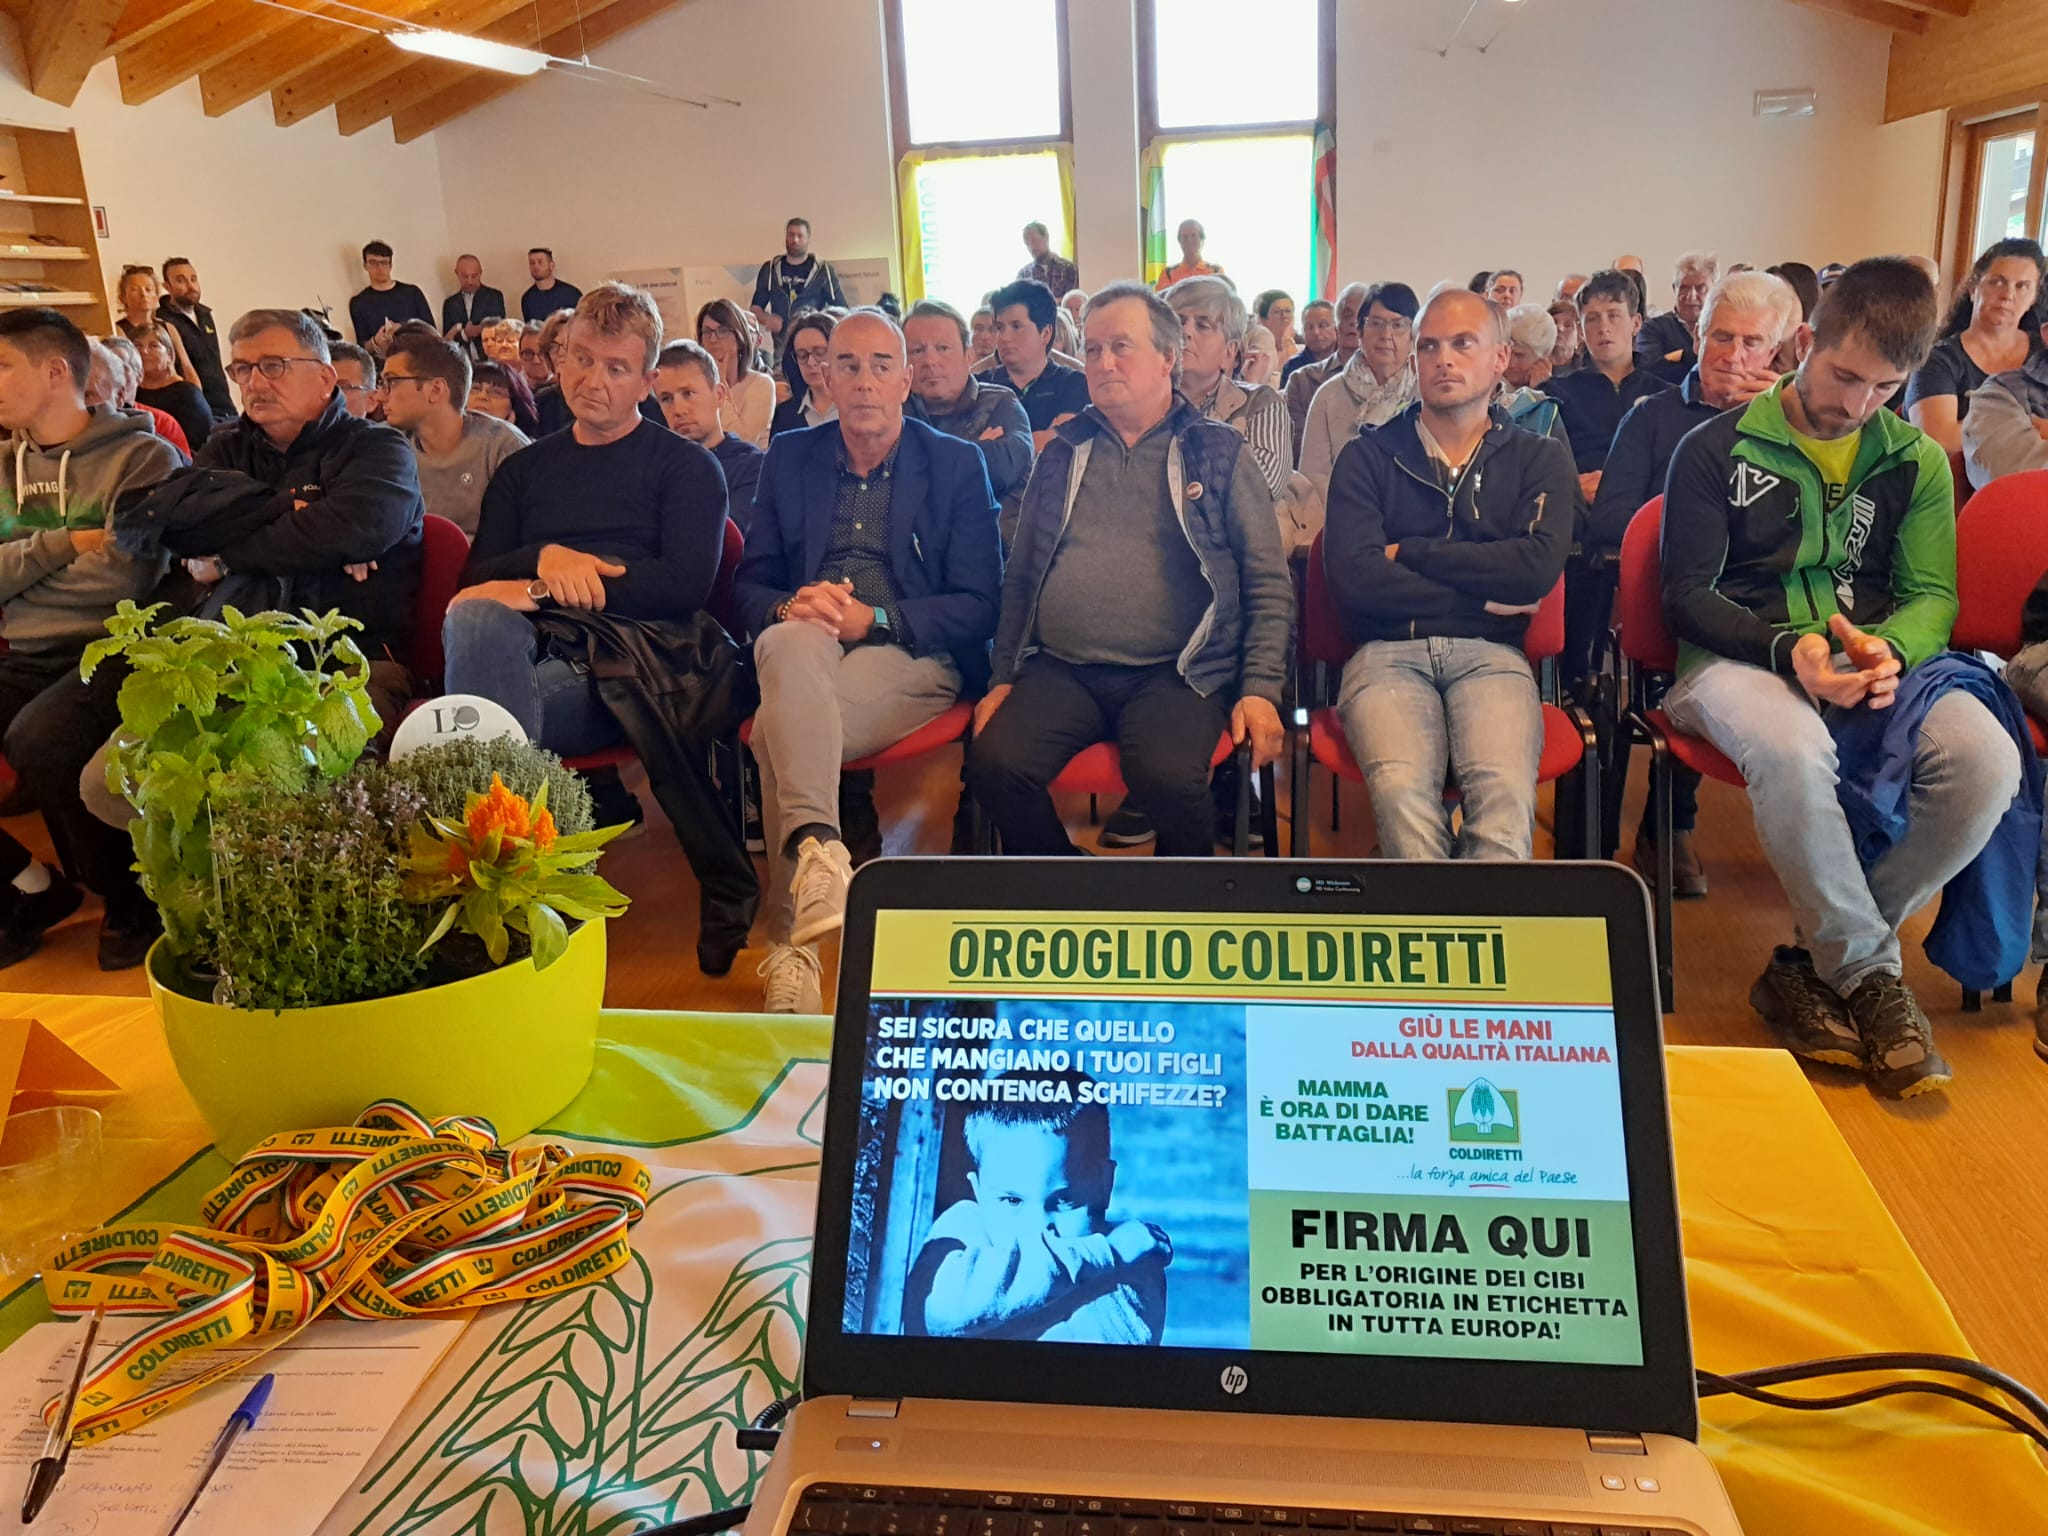 Orgoglio Coldiretti - Valtellina